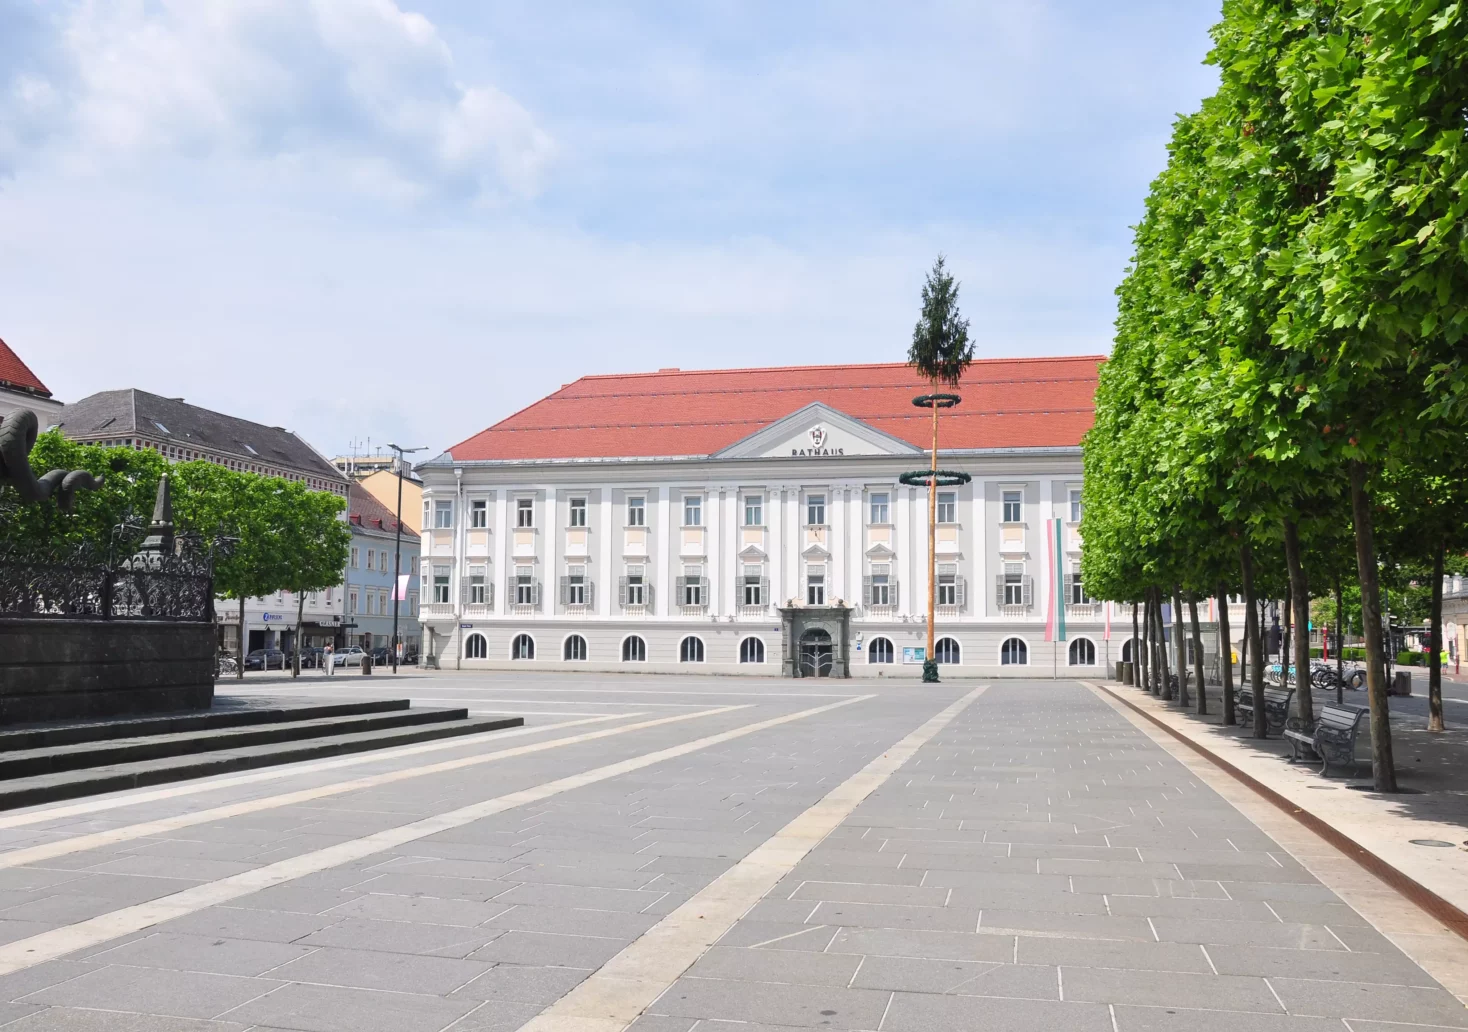 Das Foto auf 5min.at zeigt das Rathaus in Klagenfurt im Sommer.